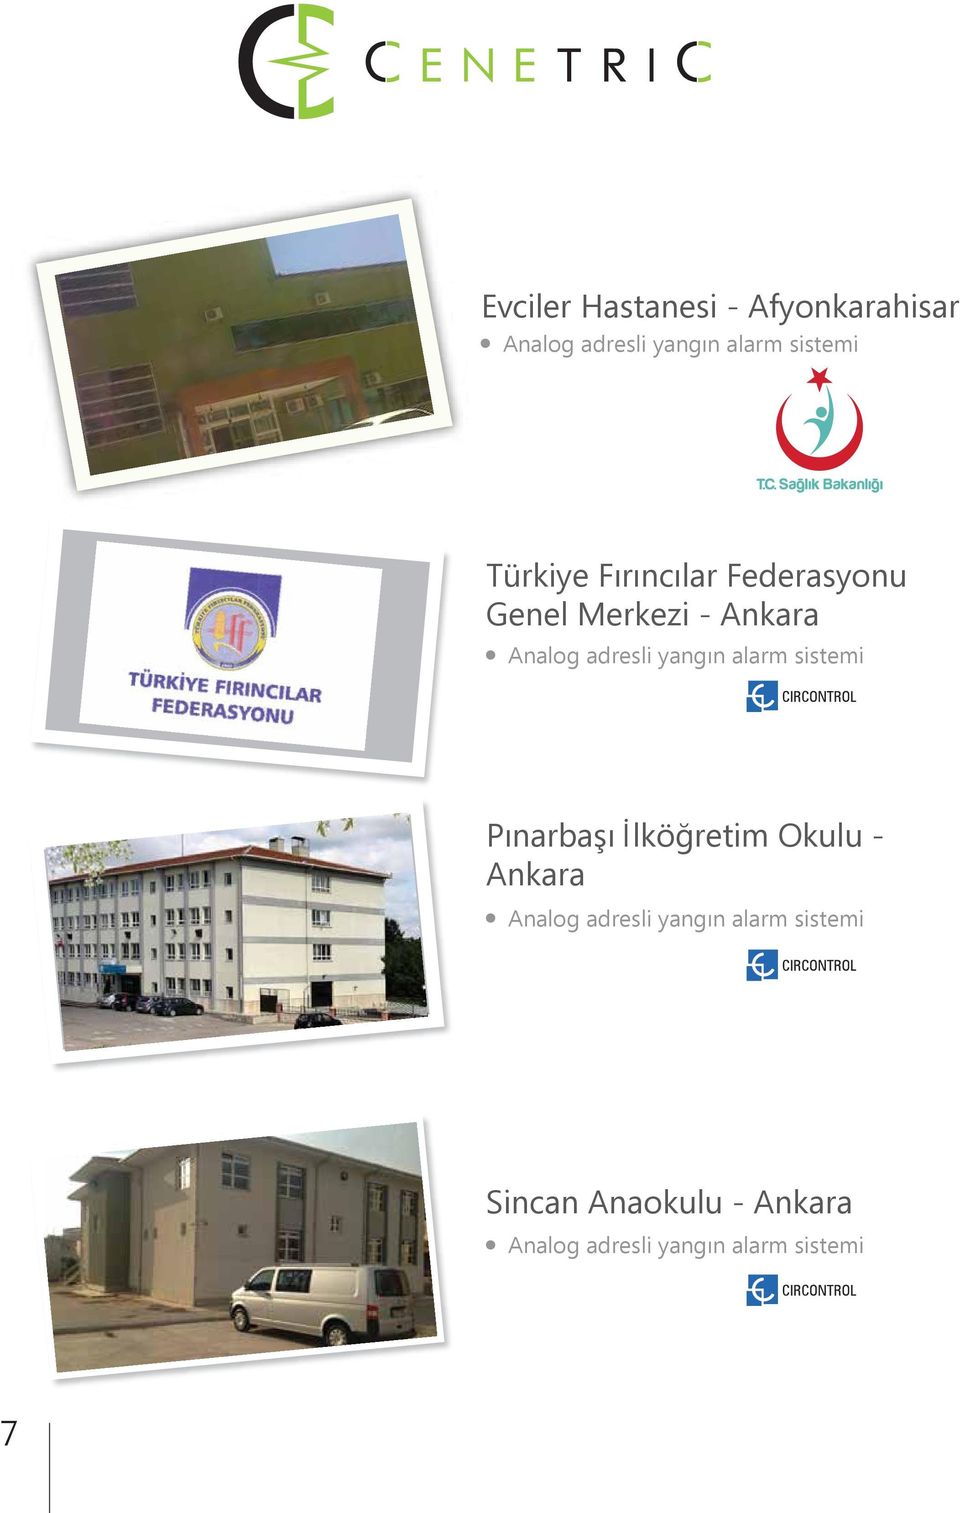 Merkezi - Ankara Pınarbaşı İlköğretim